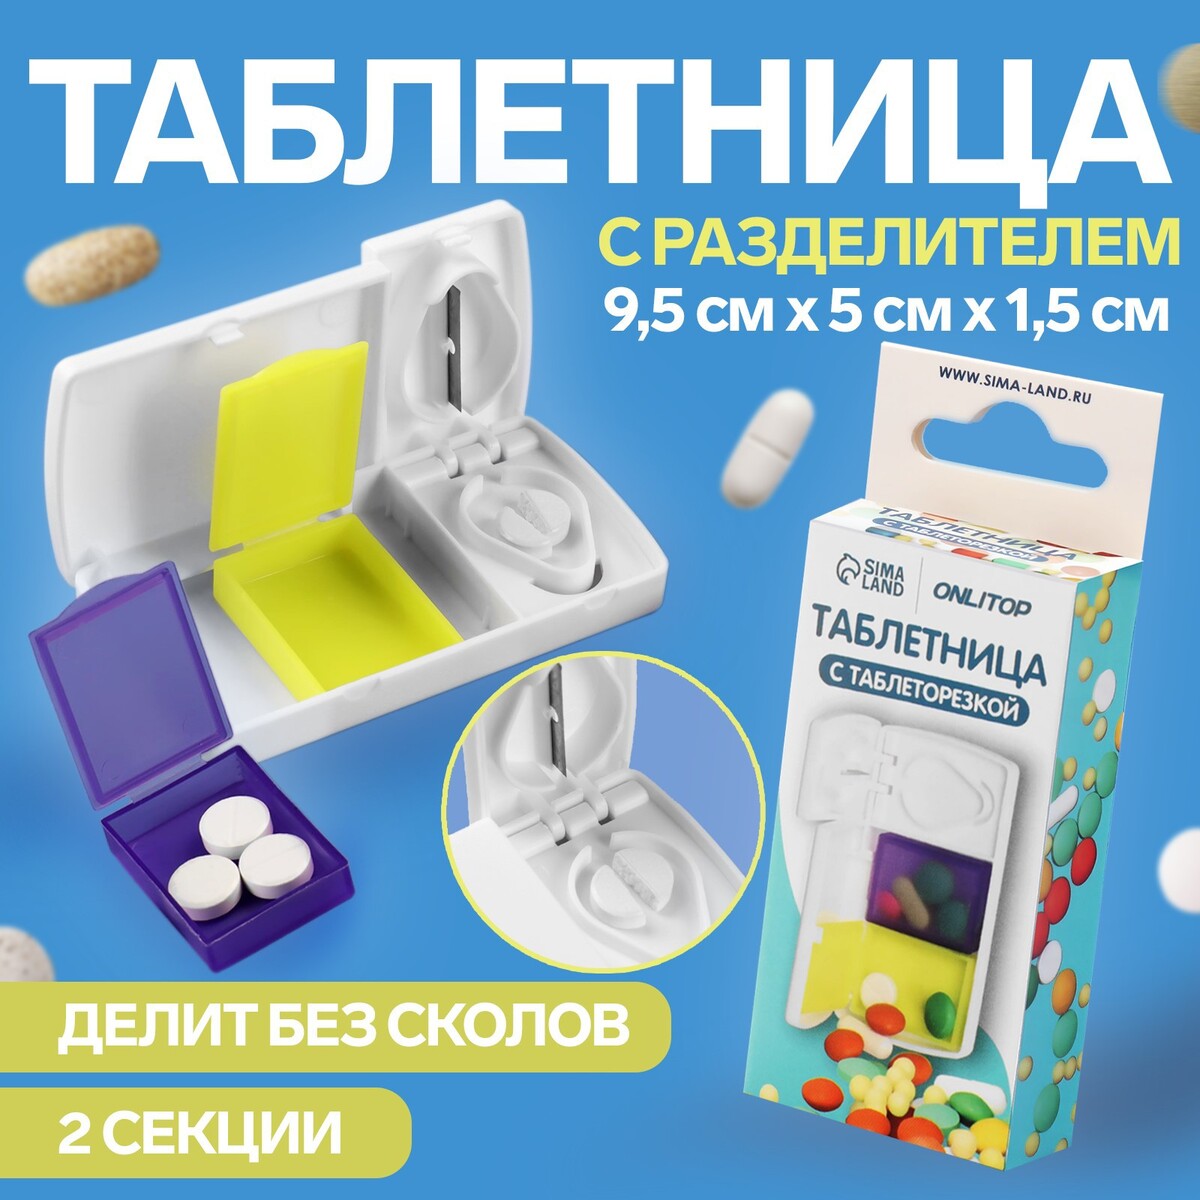 Таблетница с делителем, 2 секции, 9,5 × 5 × 1,5 см, цвет белый/желтый/фиолетовый таблетница d 5 см 3 секции серебристый